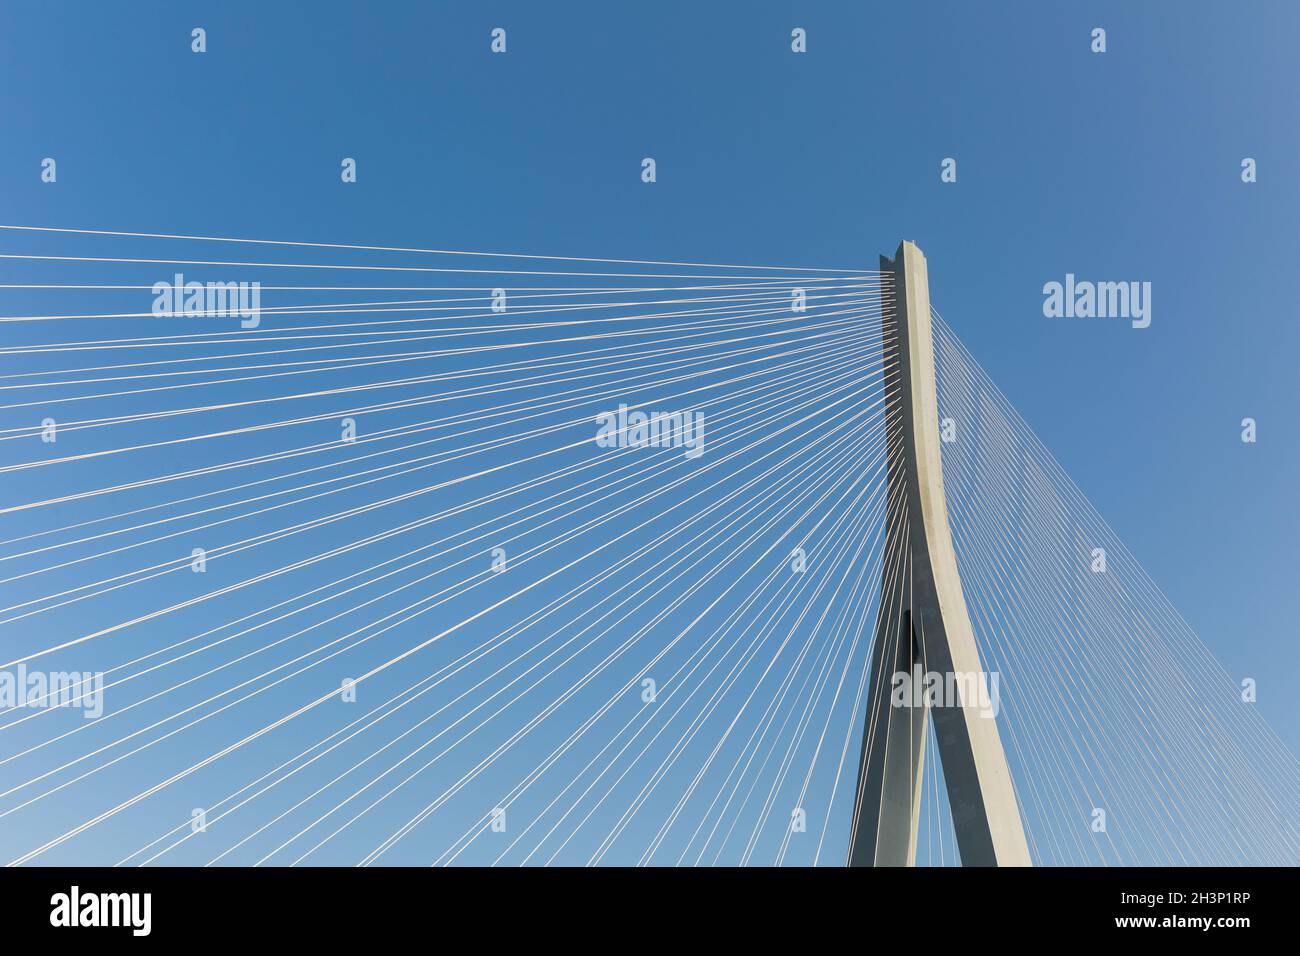 Kabelbrücke gegen einen blauen Himmel Stockfoto